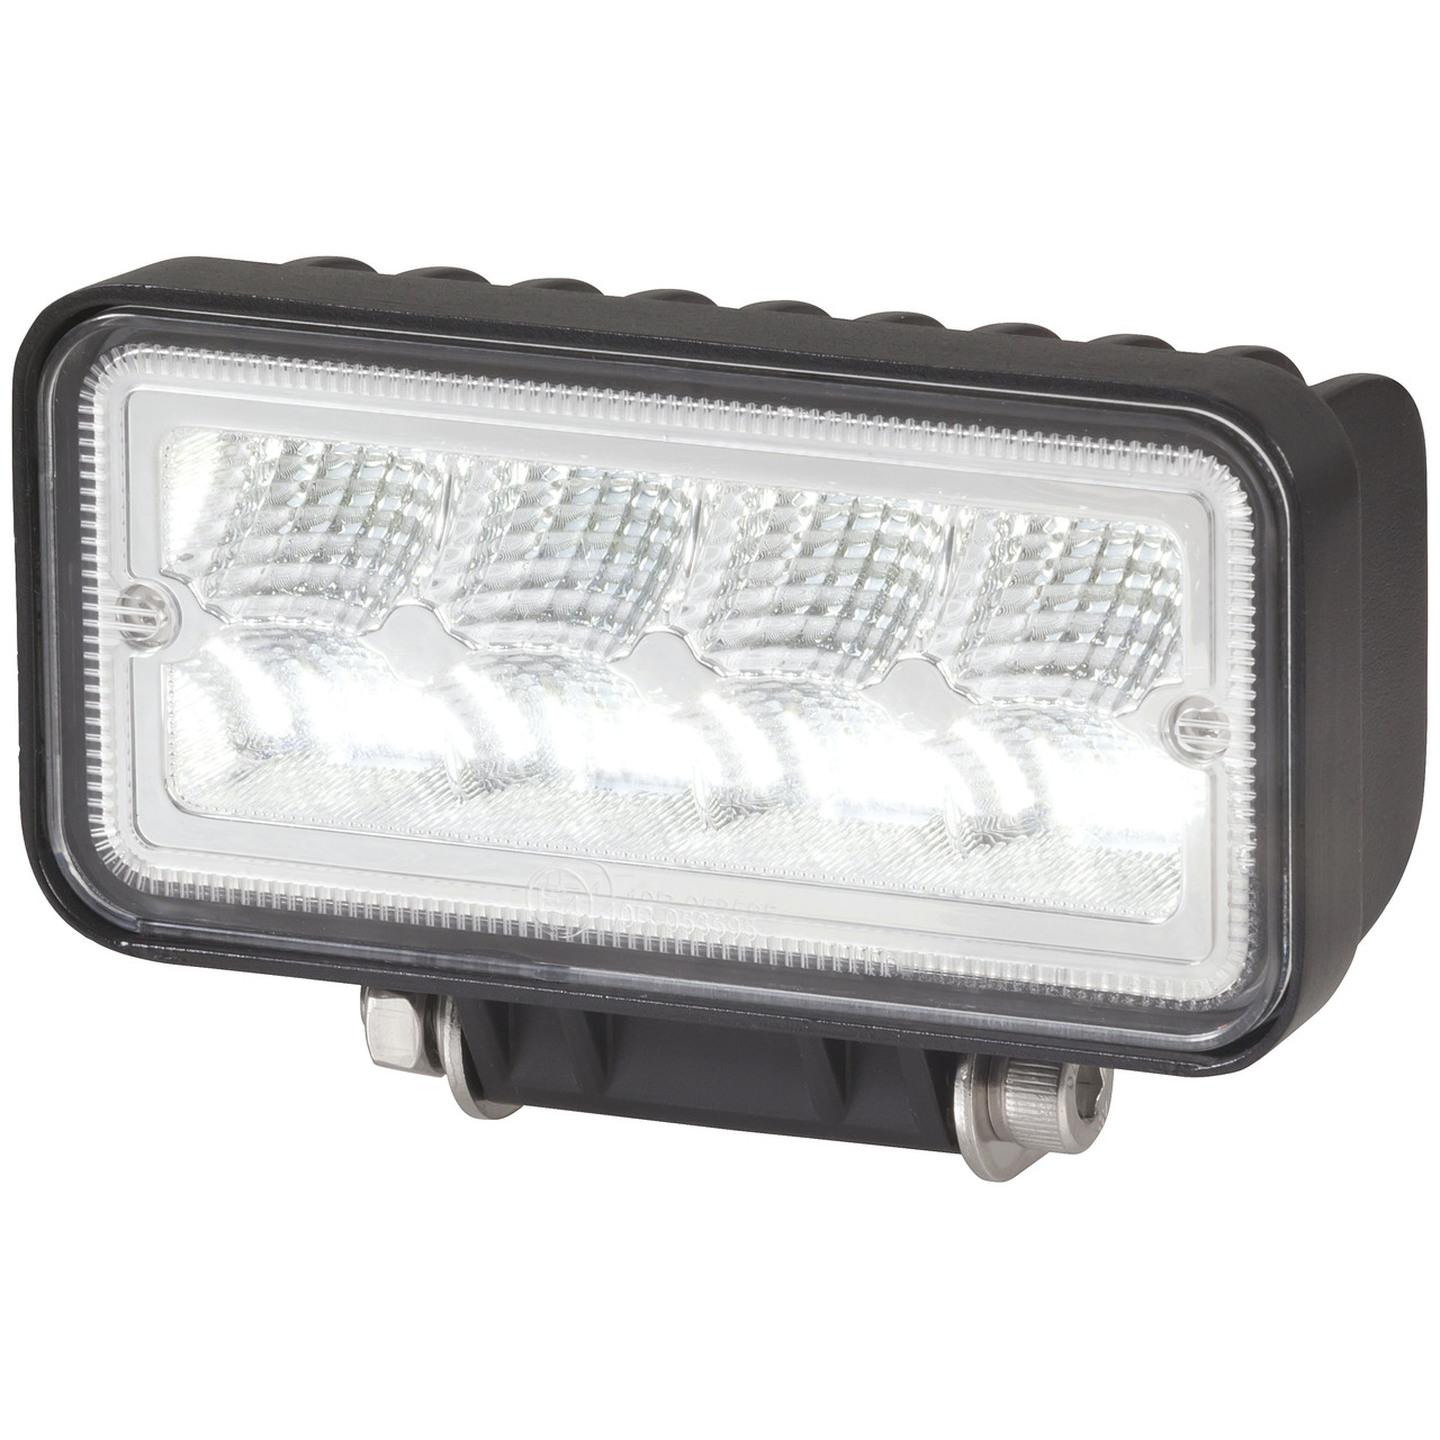 5 Inch 1136 Lumen LED Vehicle Floodlight